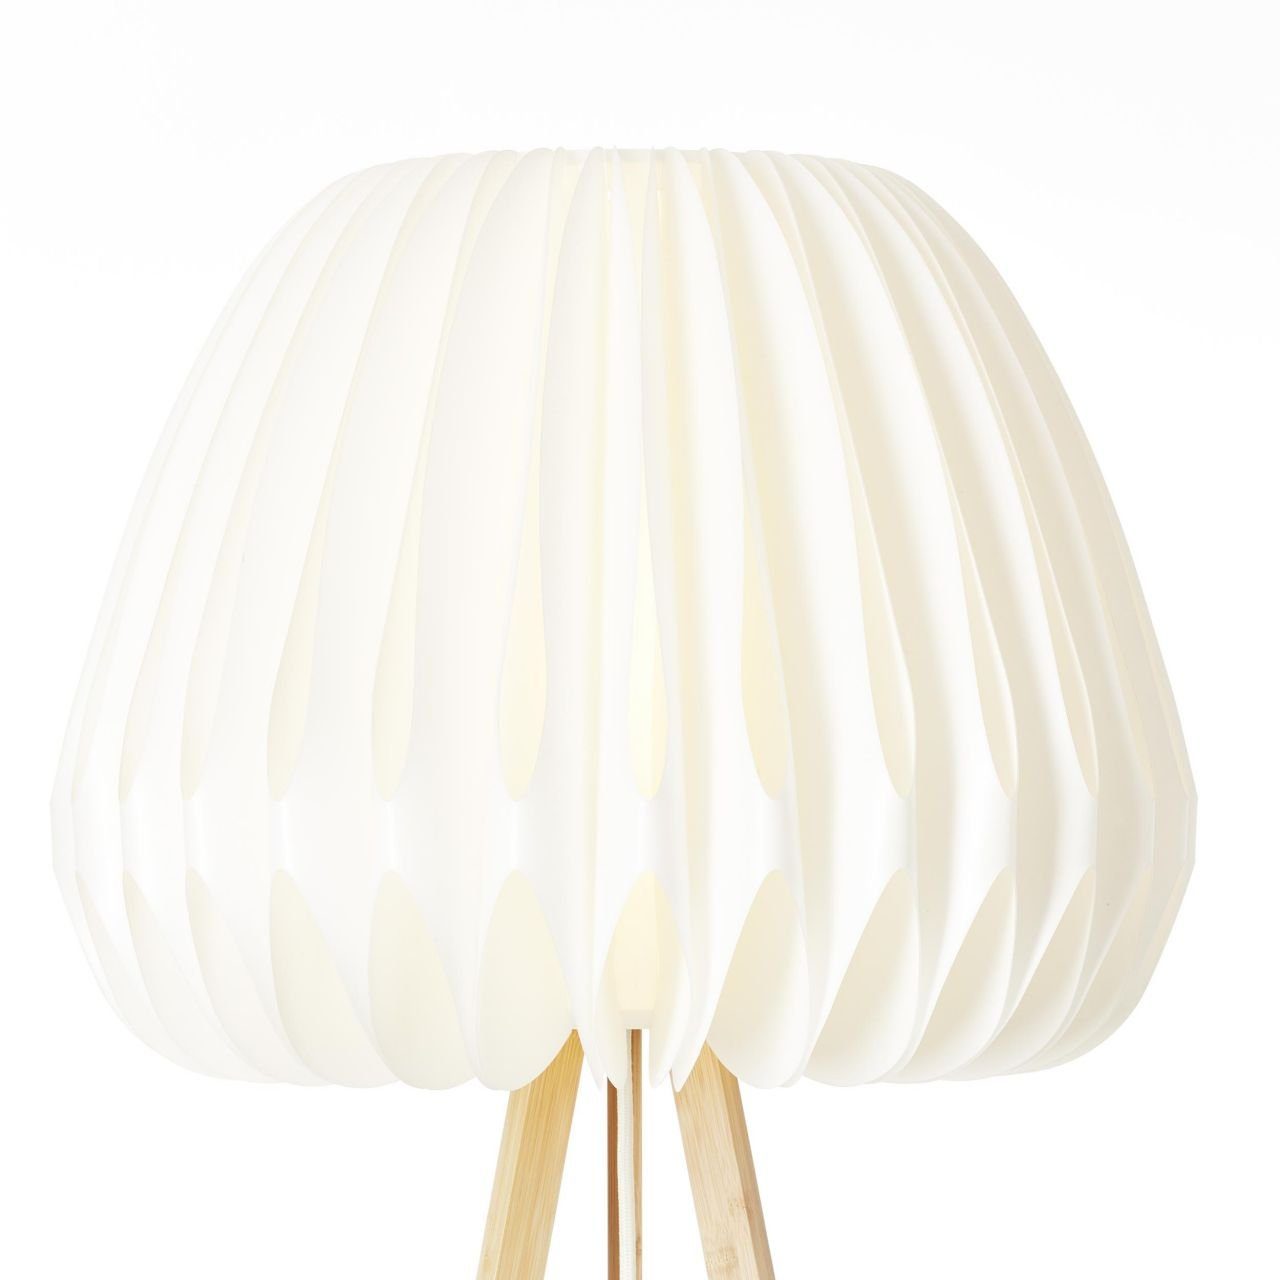 Bambus/Kunststoff Inna Stehlampe hell/weiß, Lampe, Brilliant dreibeinig holz Standleuchte, Inna,